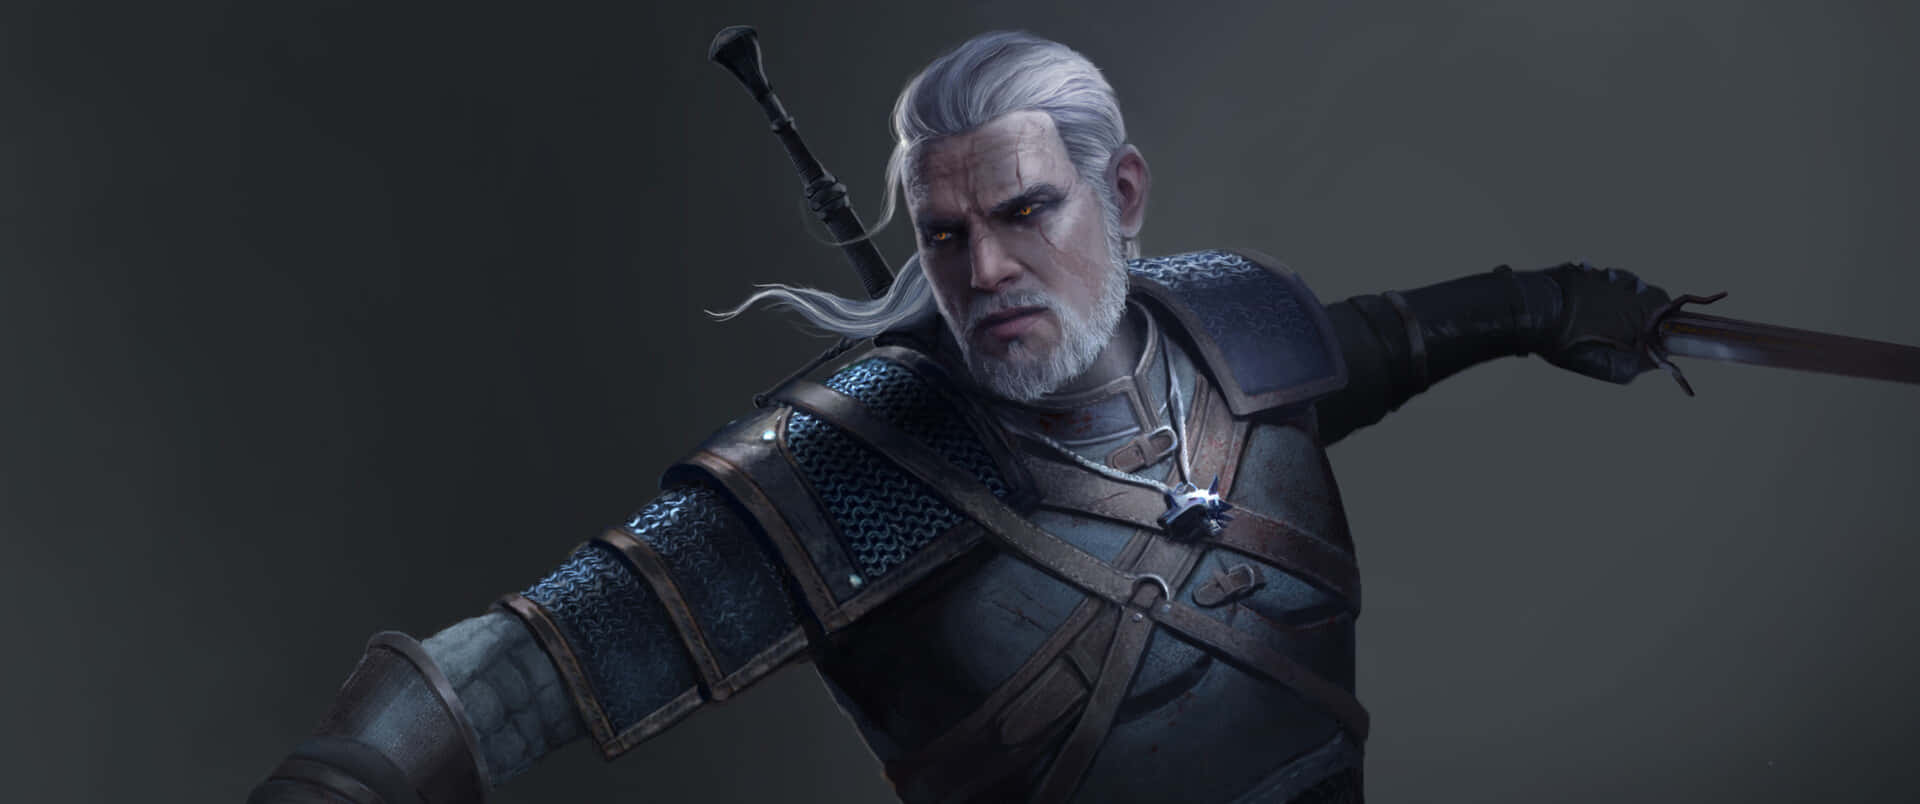 Geraltde Rivia, El Protagonista De La Popular Serie De Videojuegos The Witcher, En Todo Su Esplendor. Fondo de pantalla